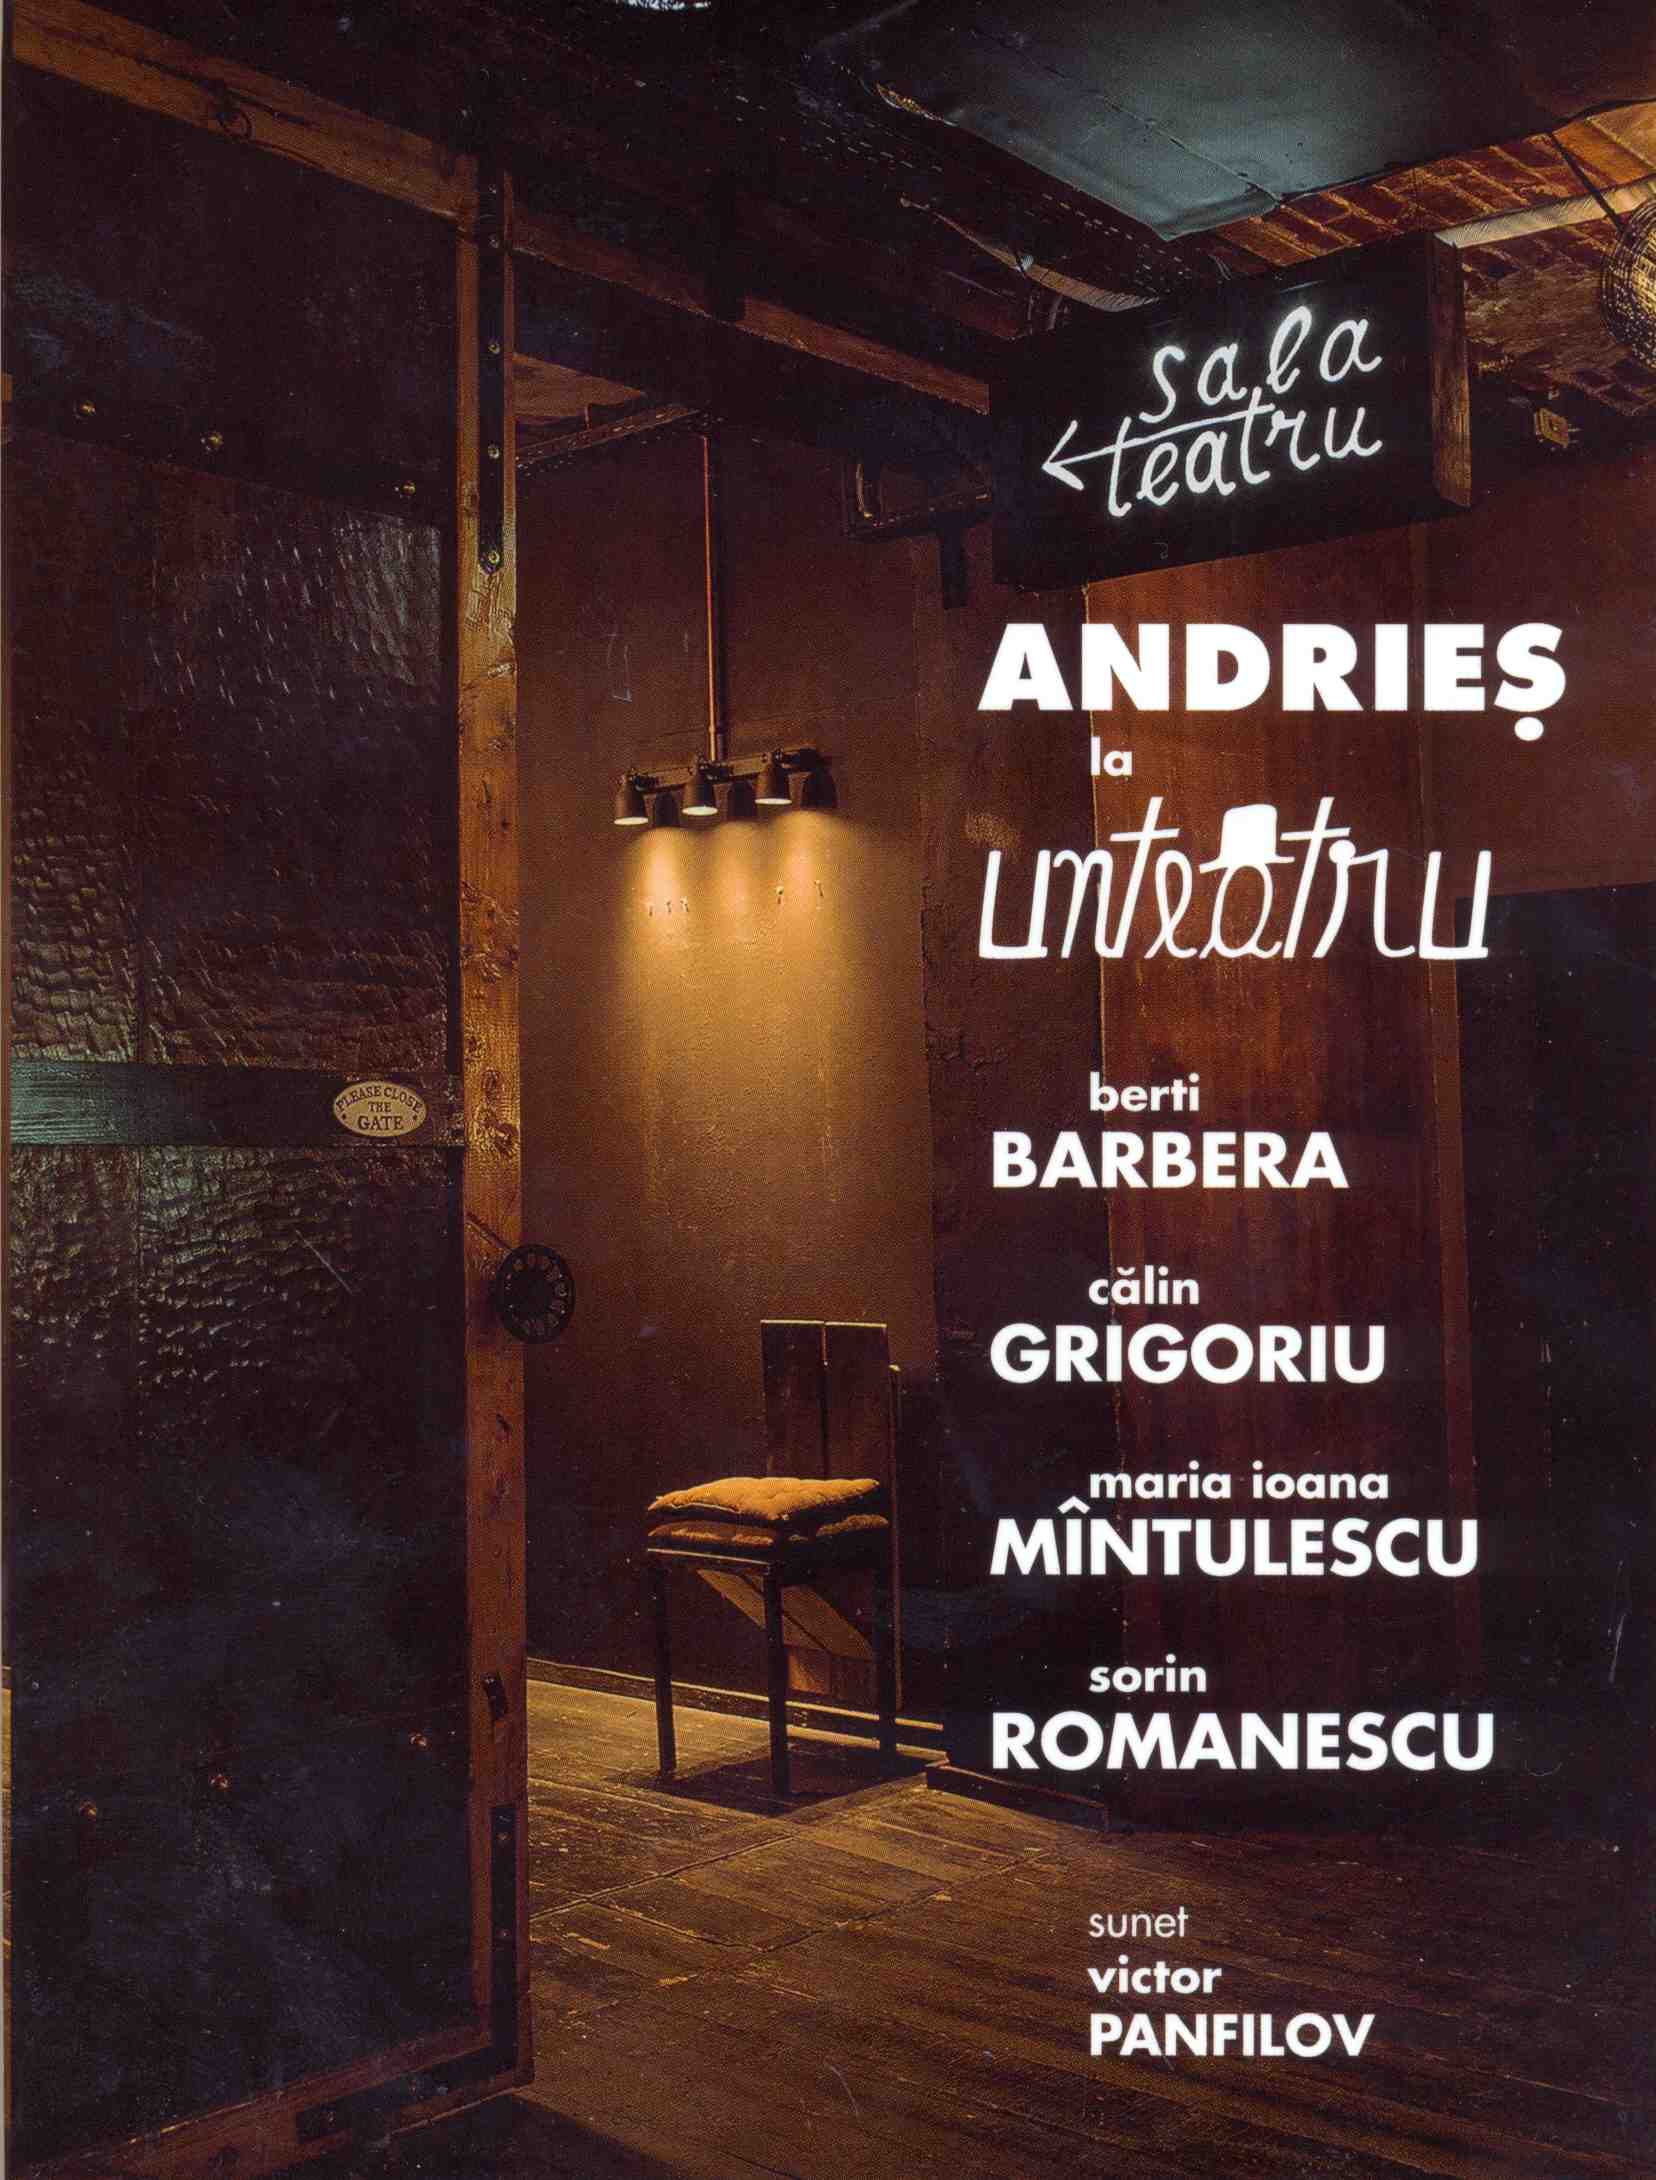 In Concert la Unteatru - CD+DVD | Alexandru Andries